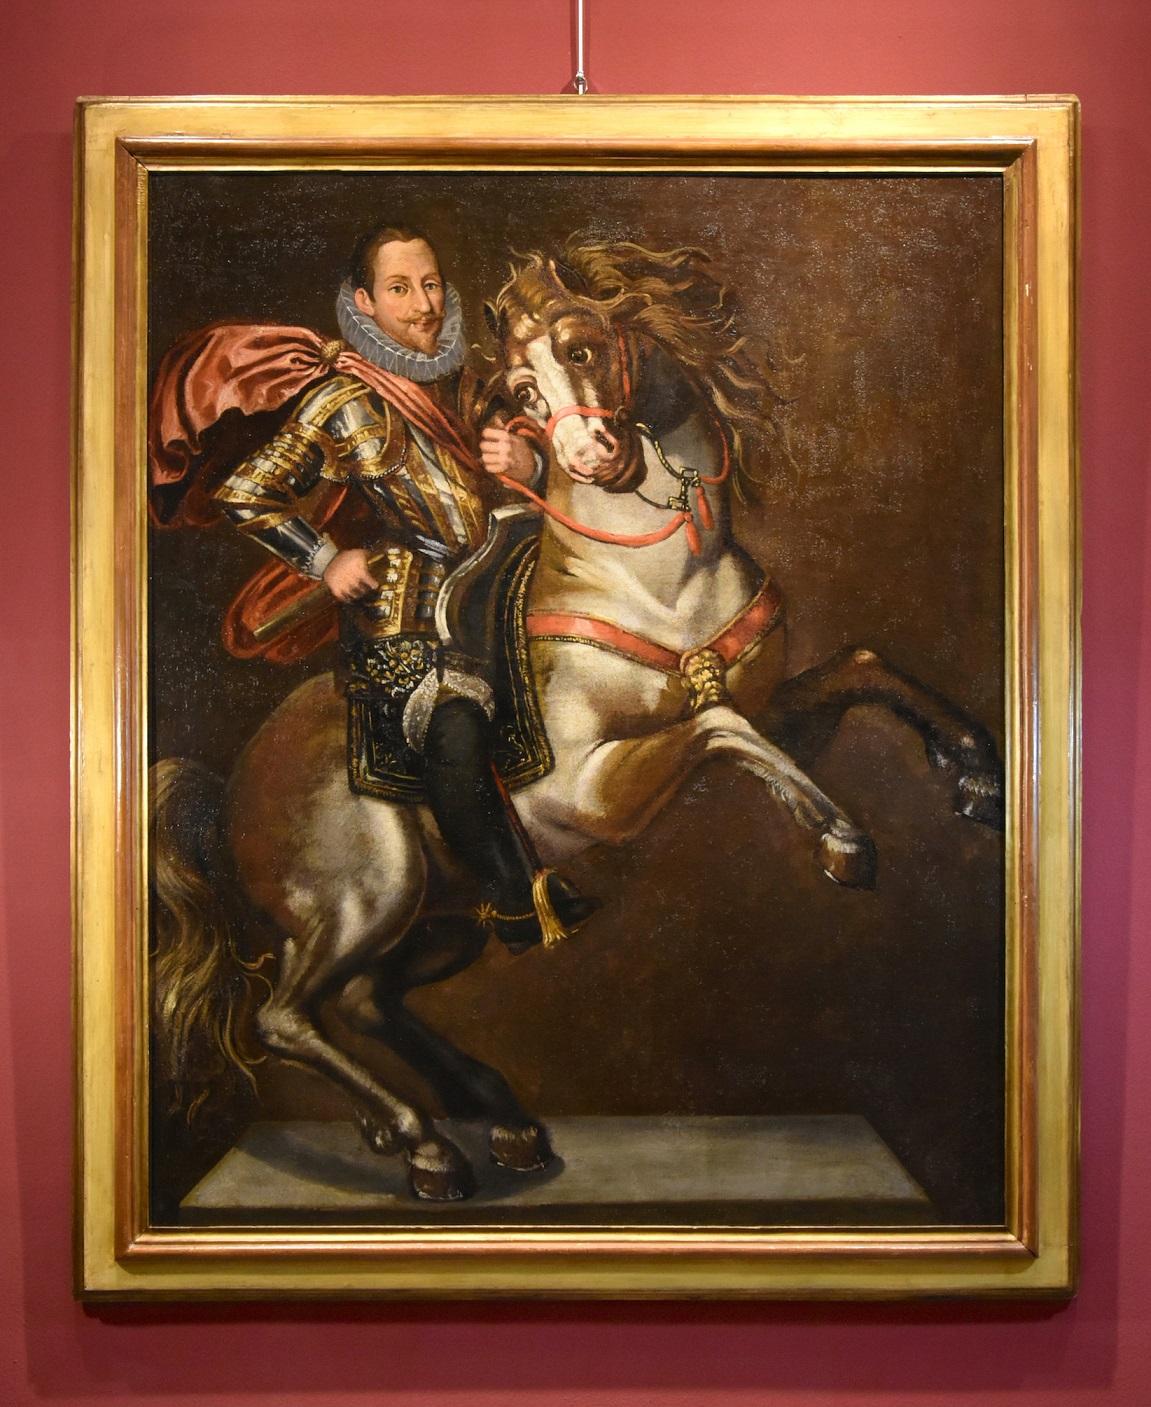 Portrait équestre Kraeck Peinture à l'huile sur toile Grand maître 16/17e siècle Italie - Painting de Jan Kraeck, in Italy Giovanni Caracca (Haarlem c. 1540 - Turin 1607) 